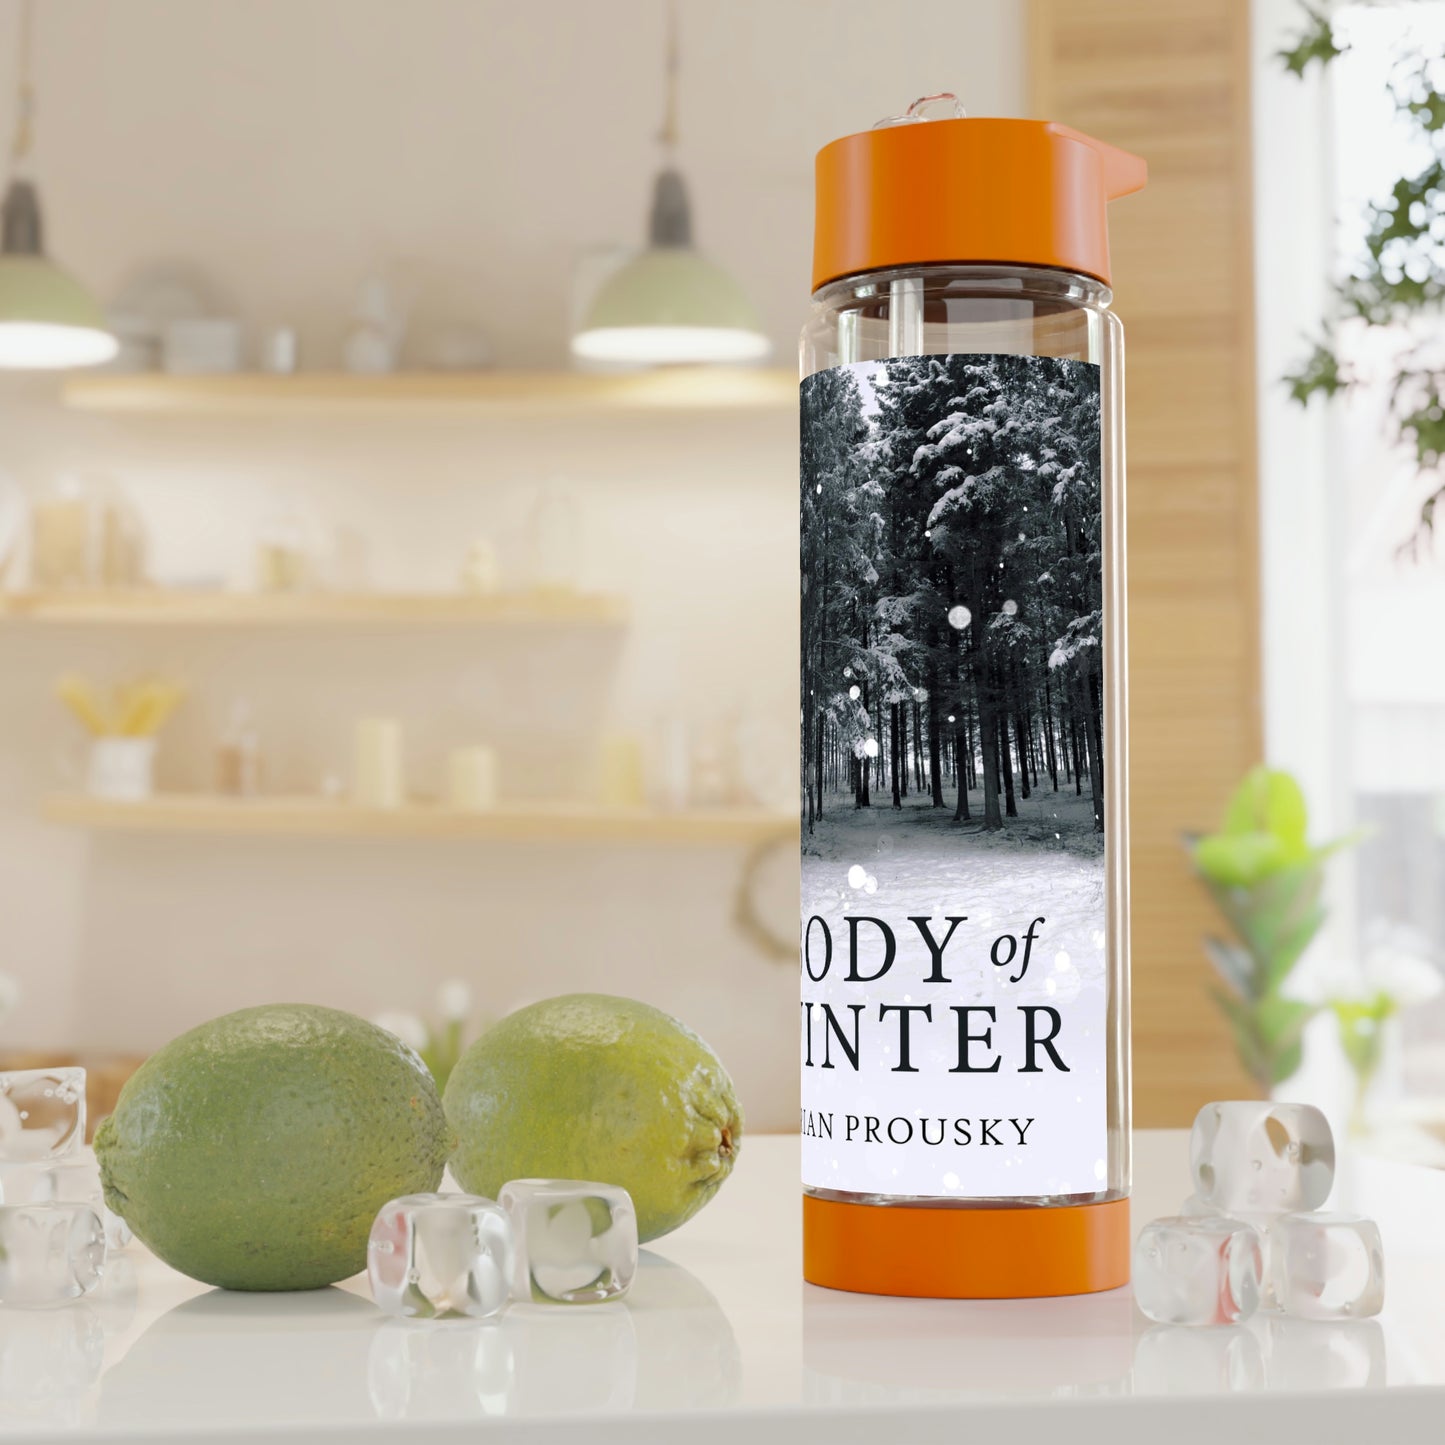 Body Of Winter - Infuser Water Bottle